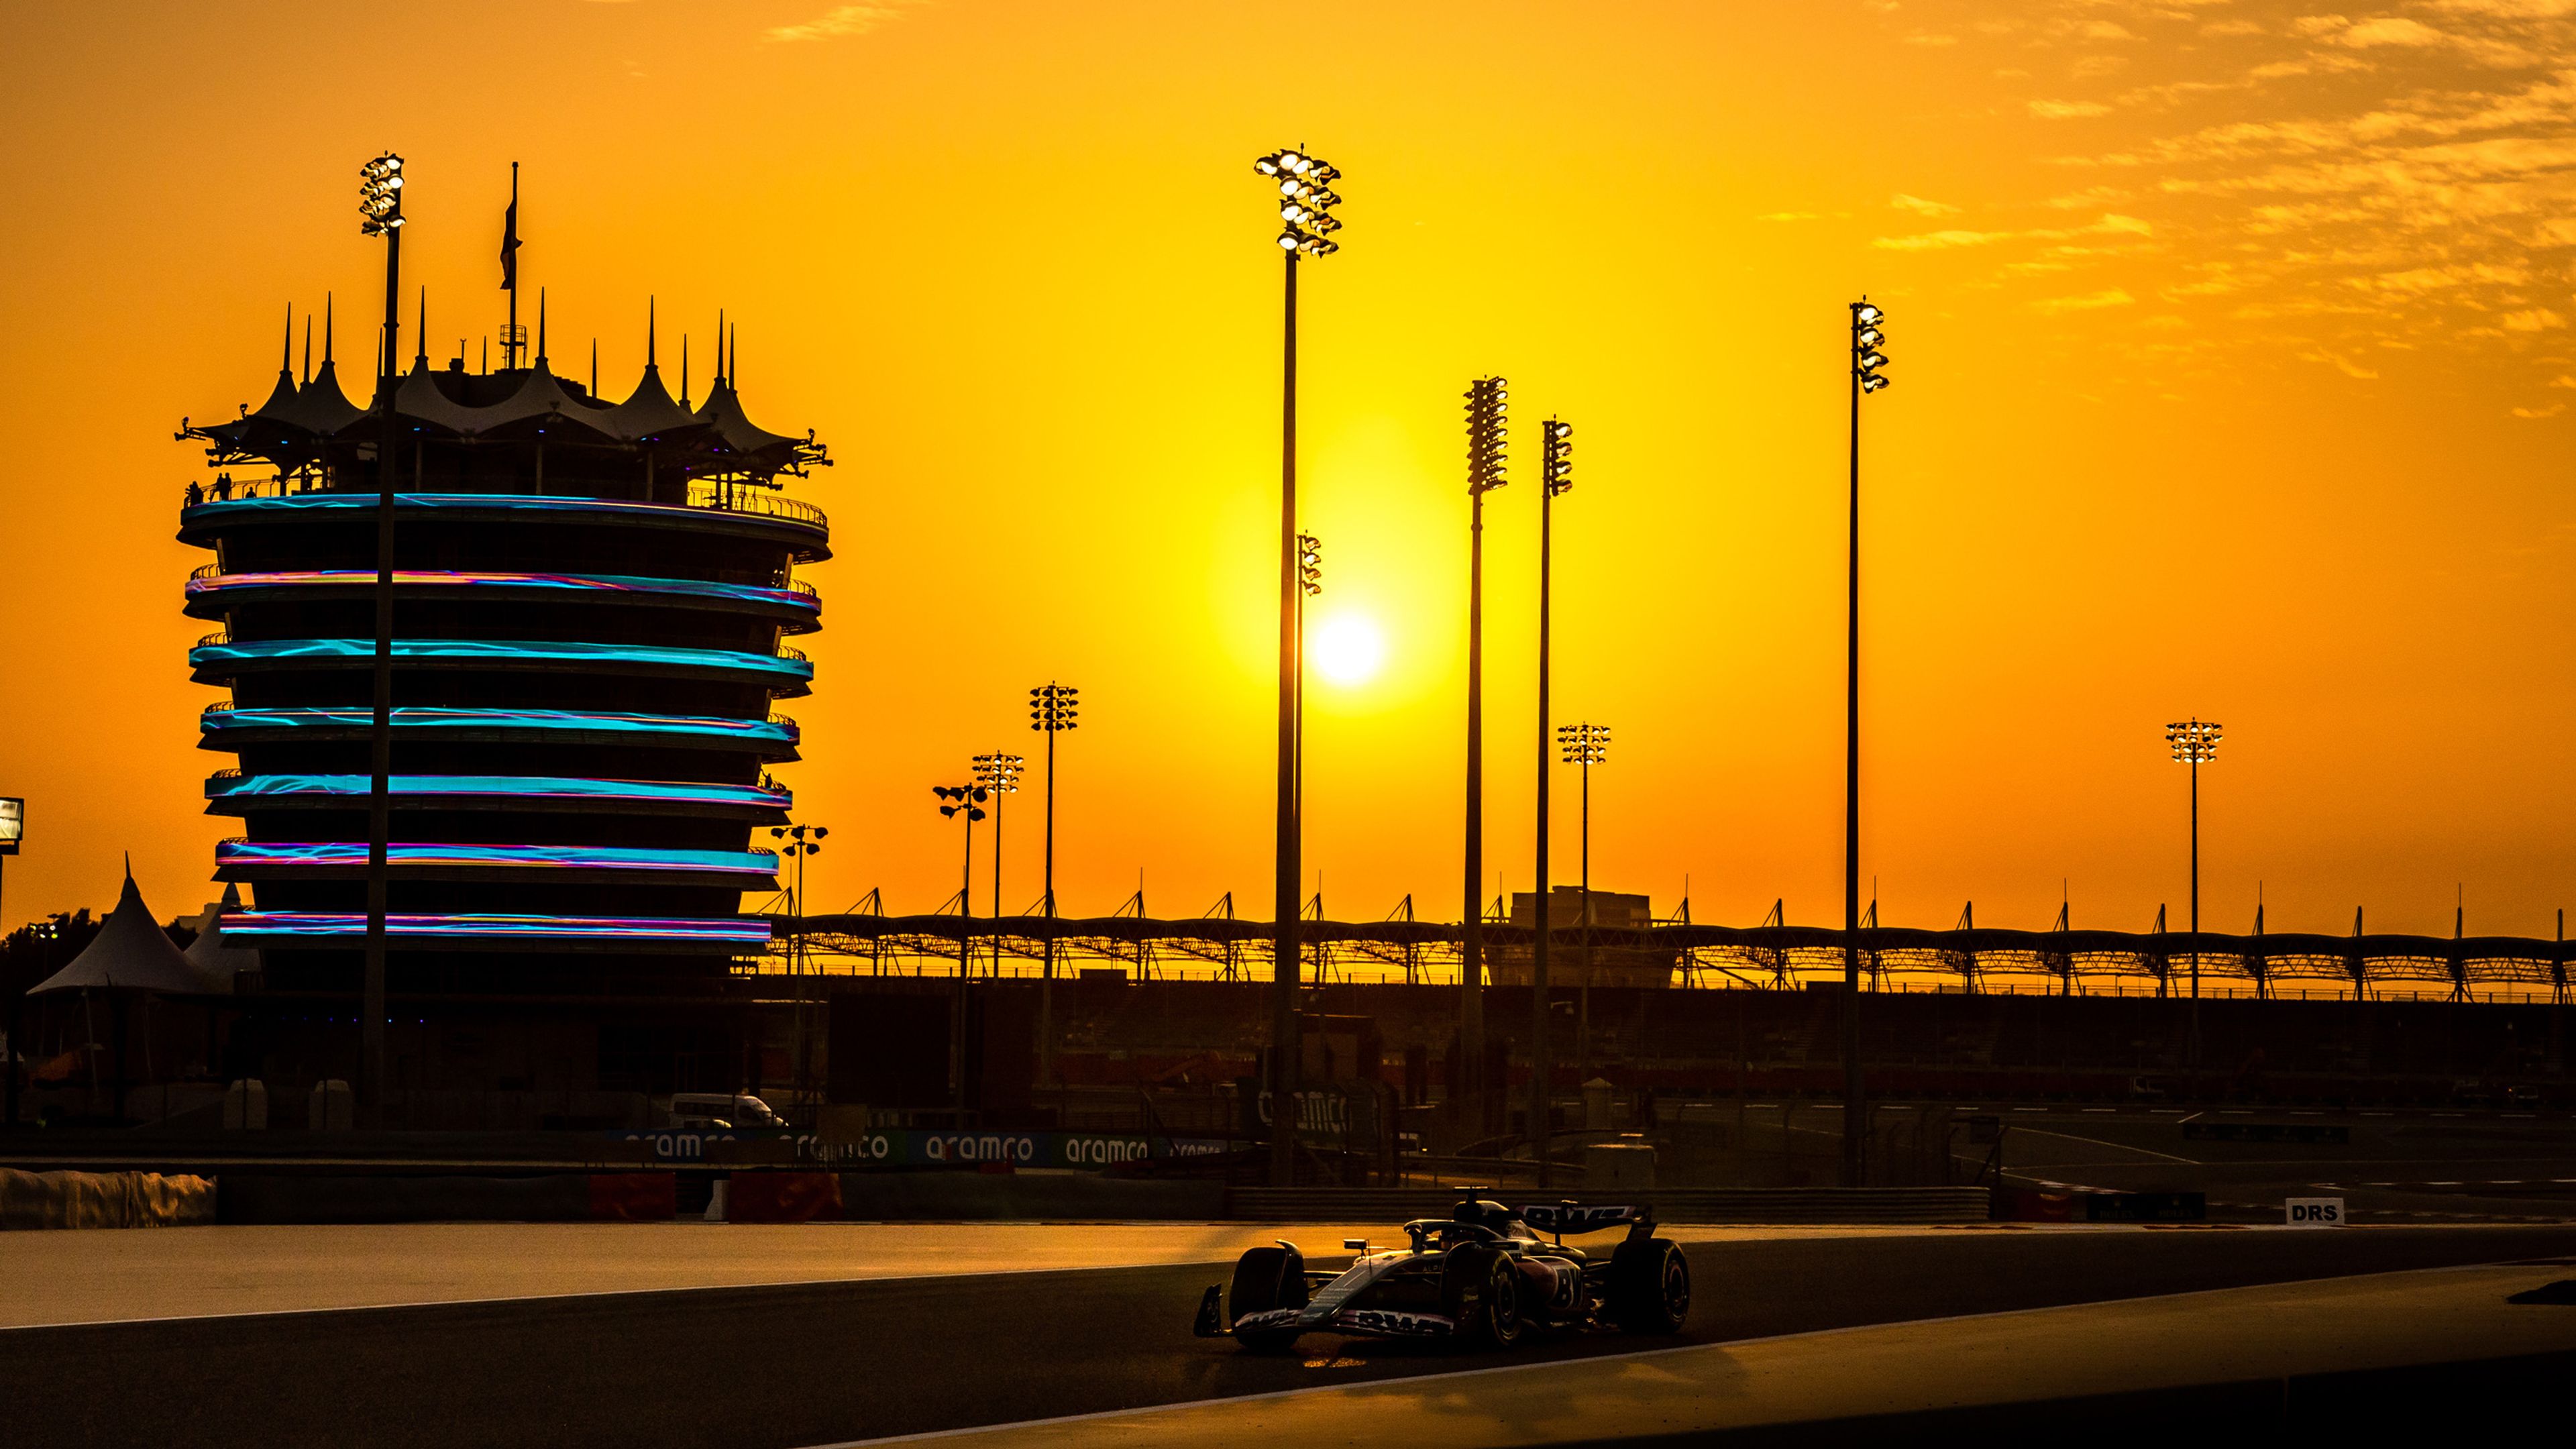 Las mejores imágenes de los test de pretemporada 2023 de Fórmula 1